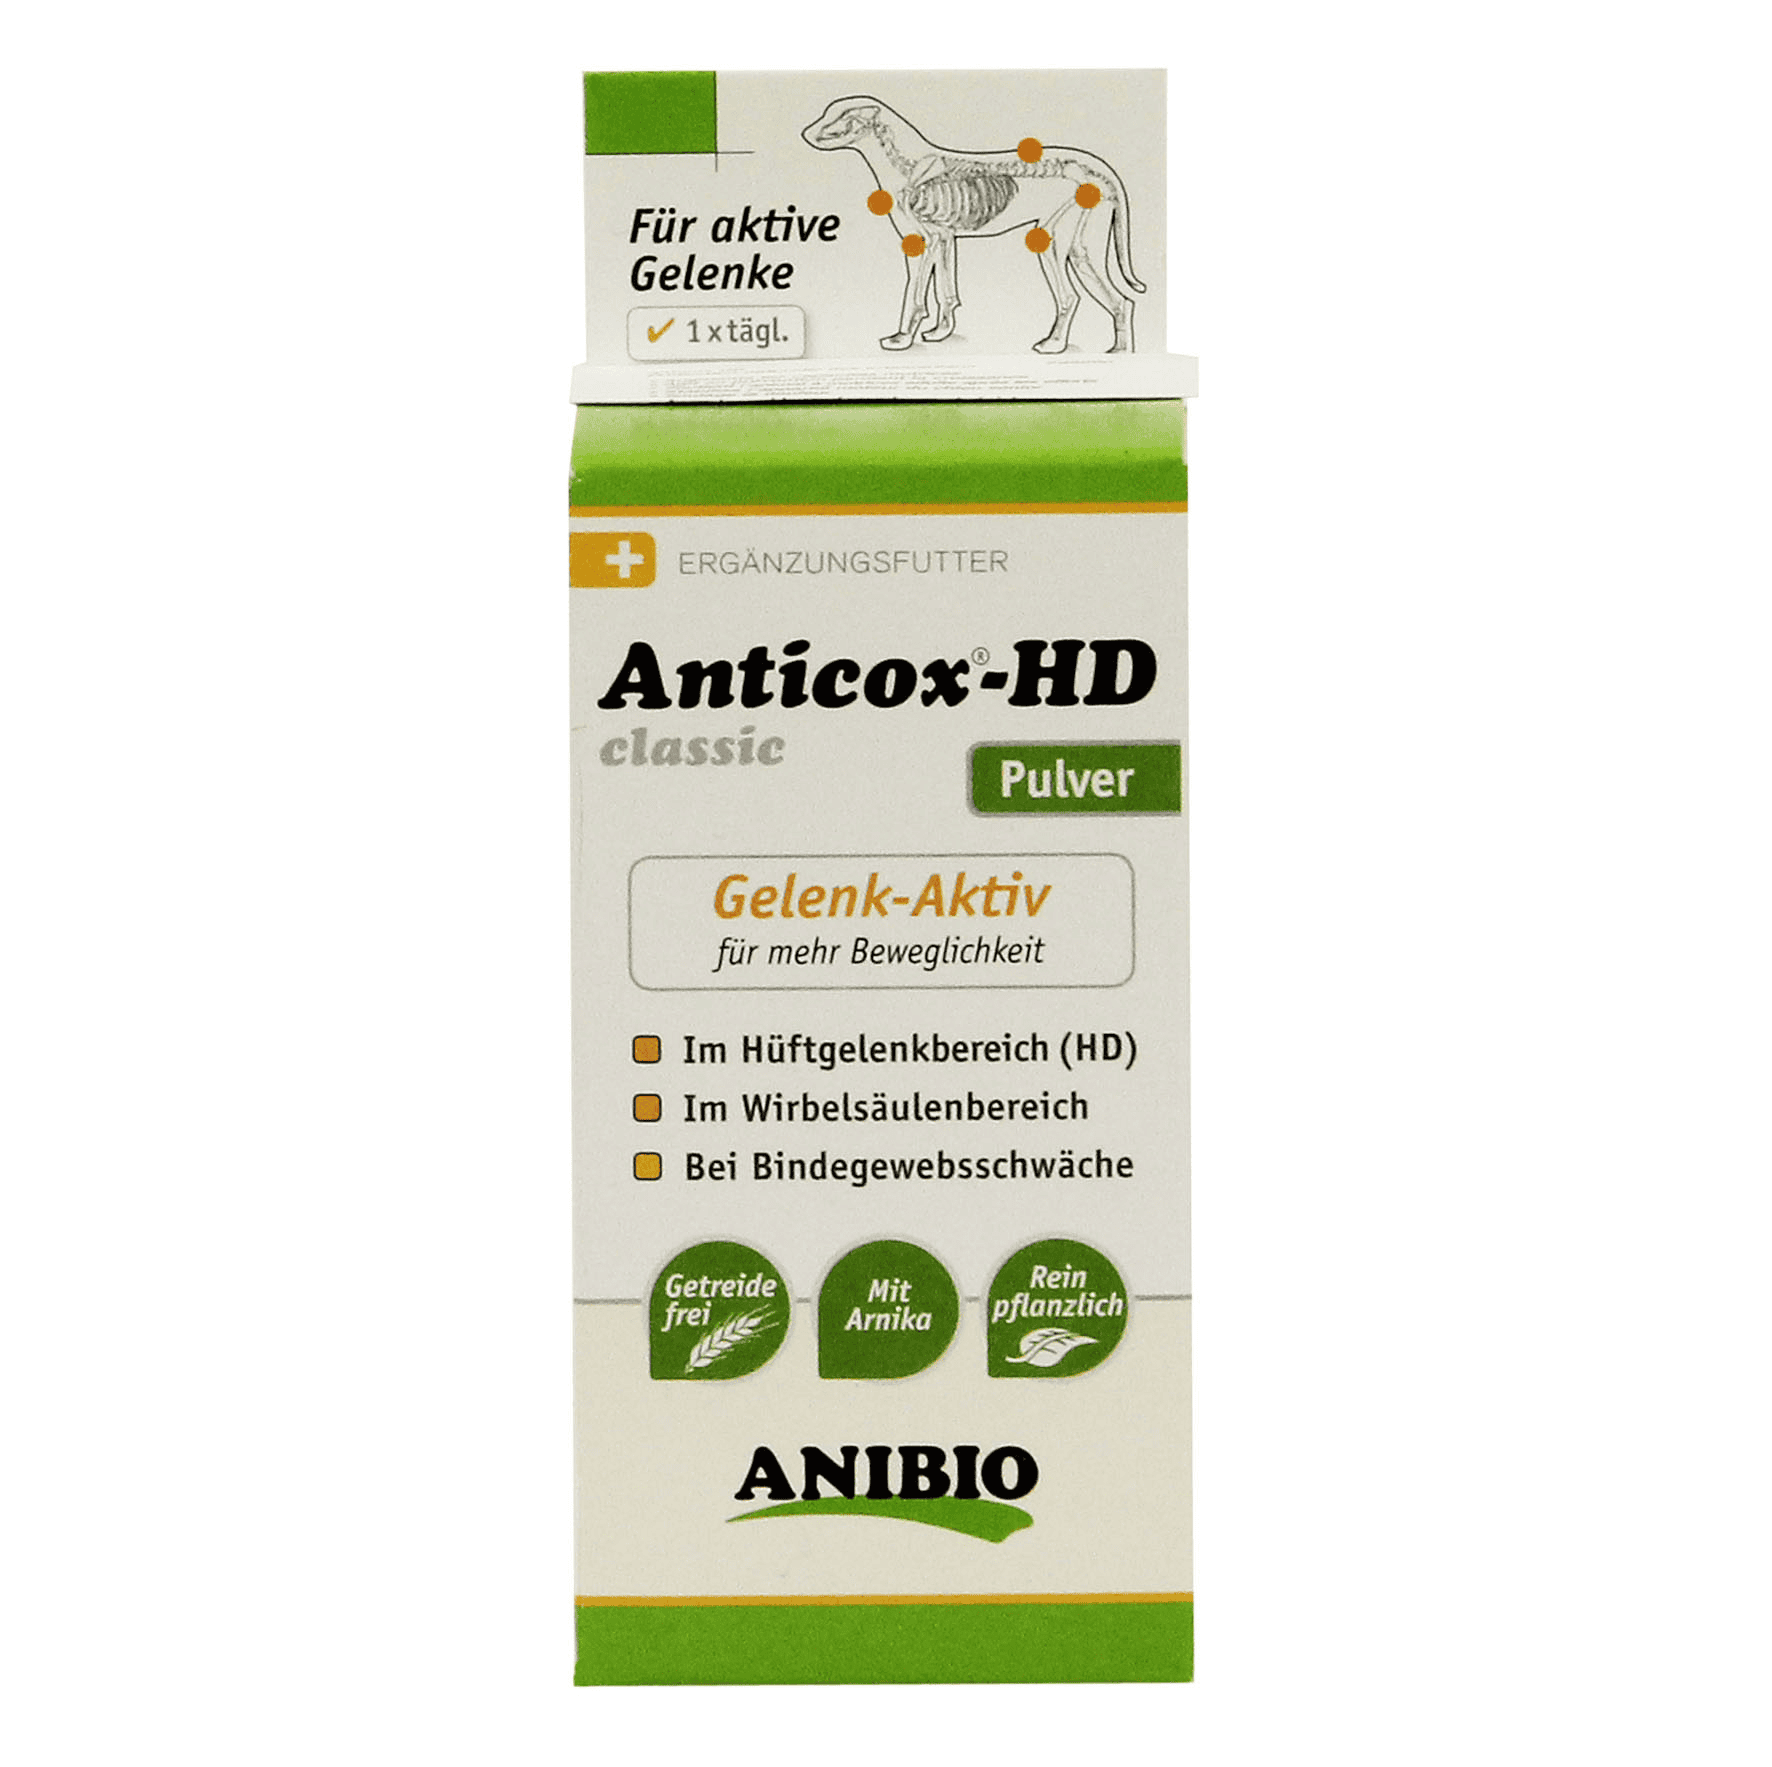 Anibio Anticox-HD sicher und schnell erhalten iPet.ch